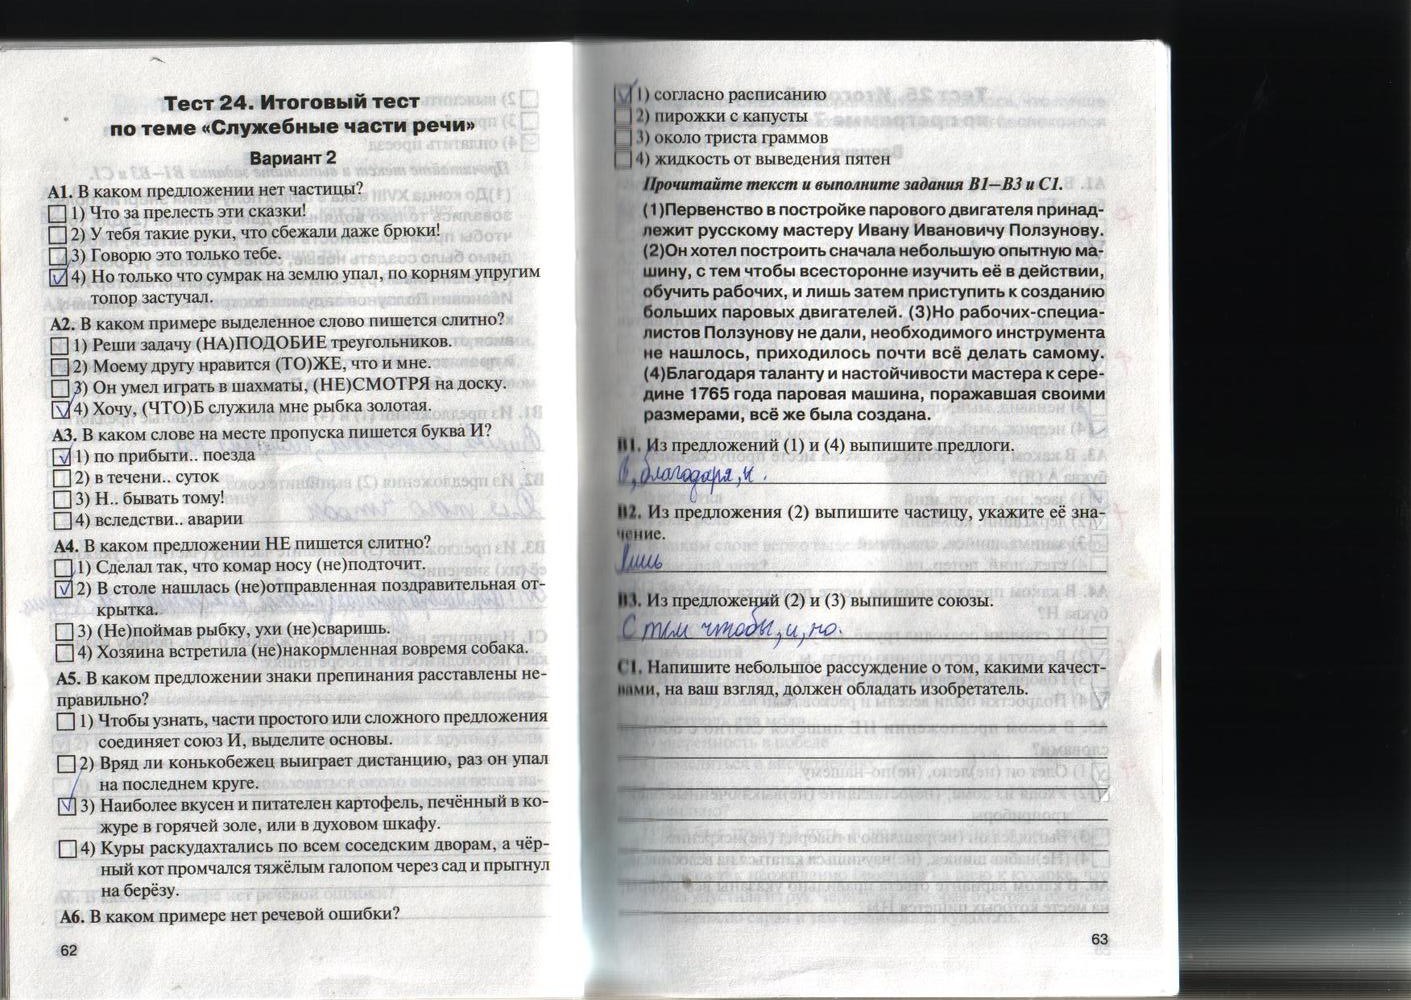 Контрольно-измерительные материалы, 7 класс, Егорова Н.В., 2012, задание: стр. 62-63